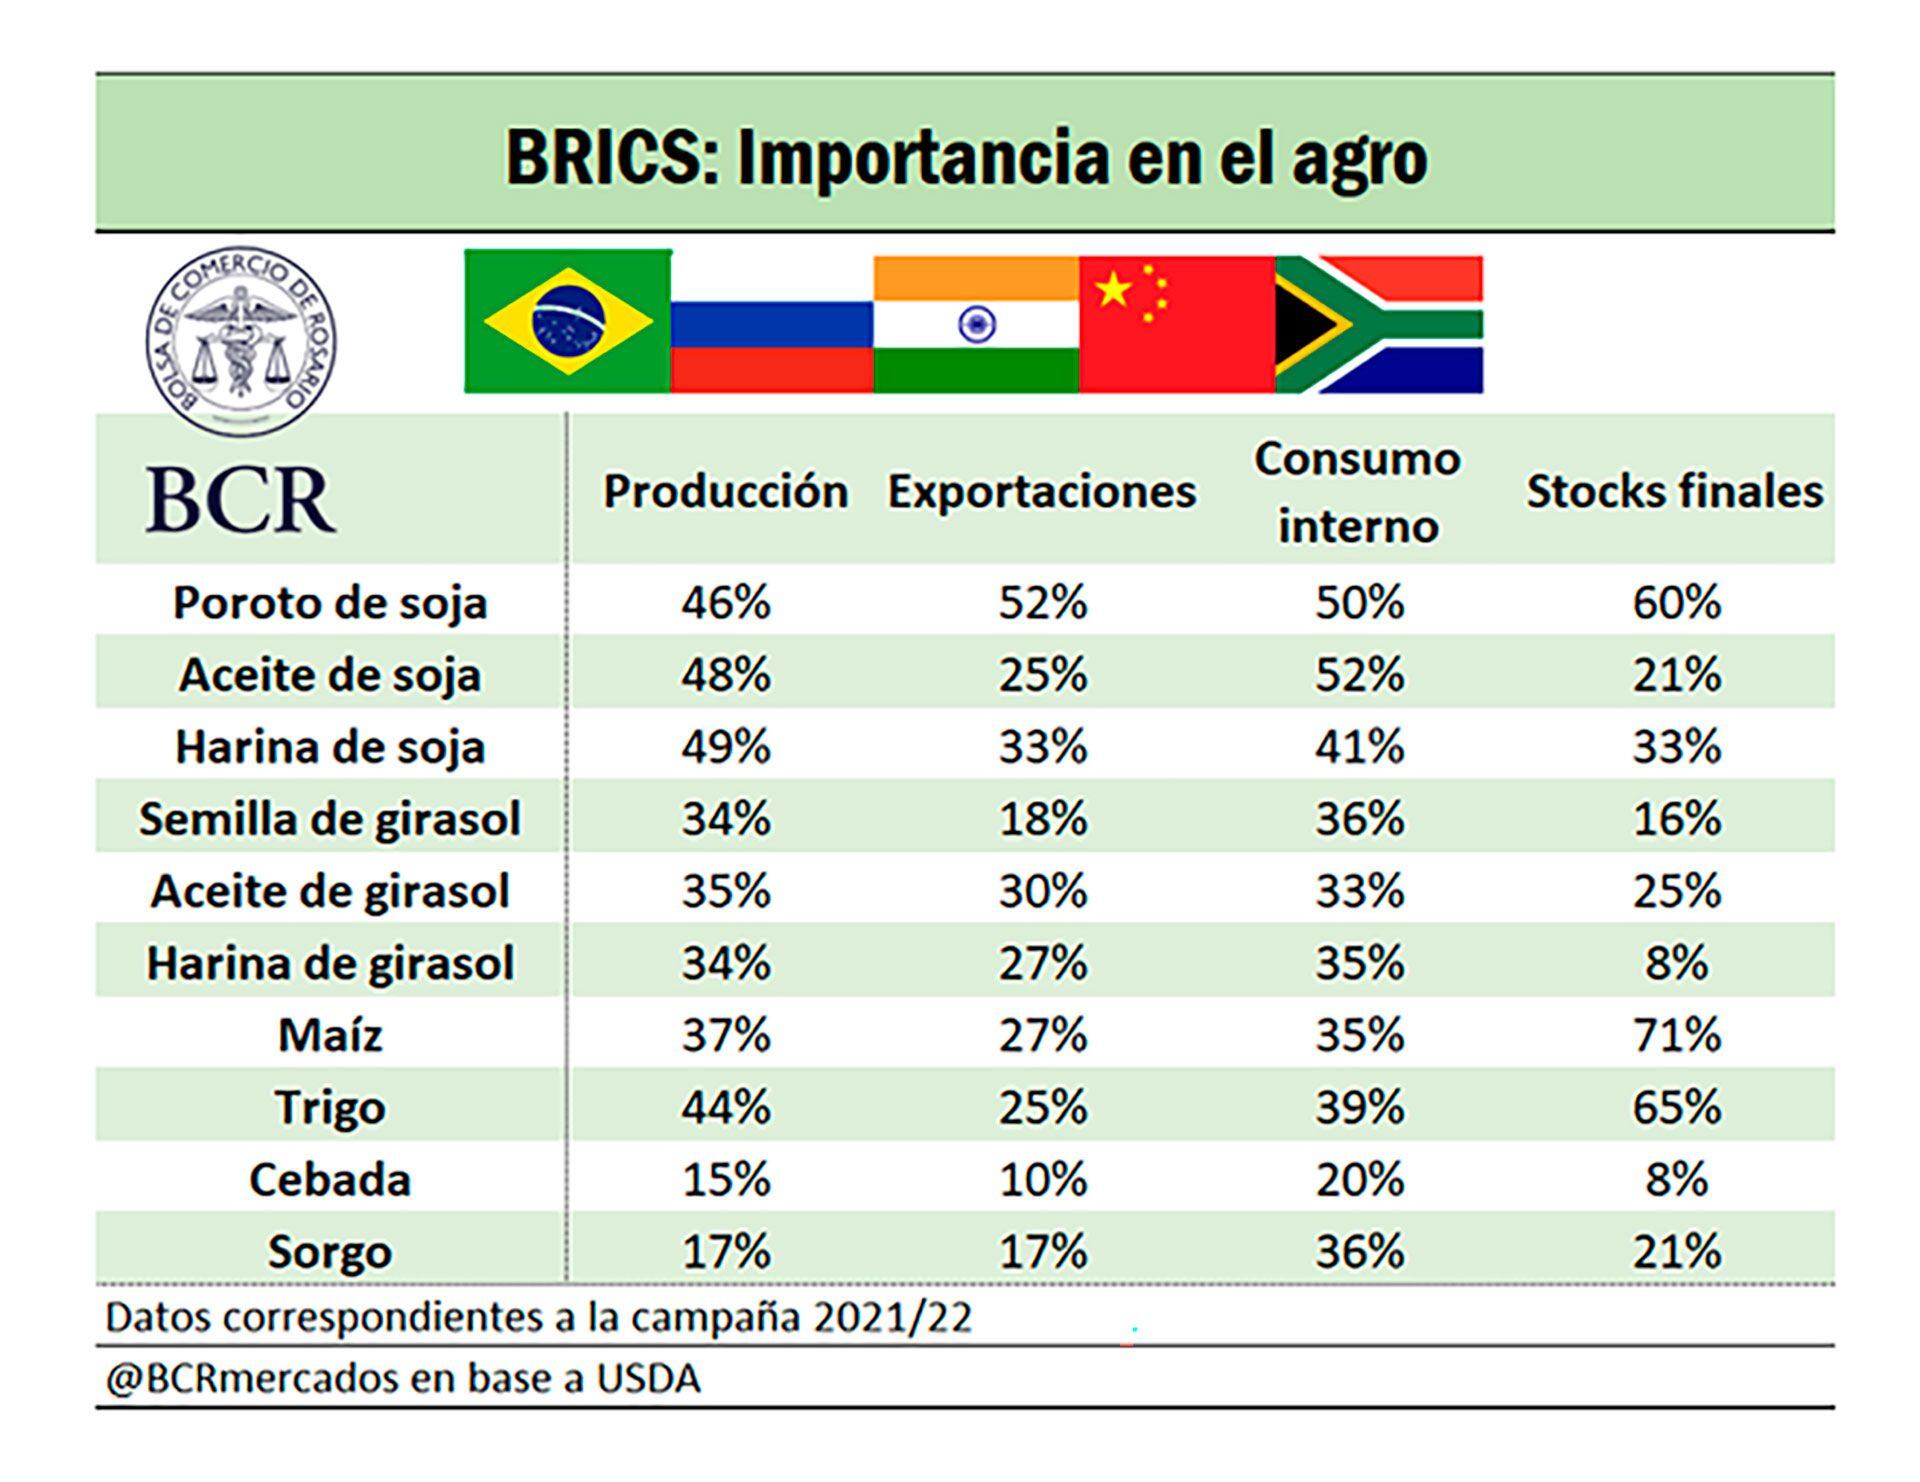 BCR BRICS Exportaciones Agroindustria